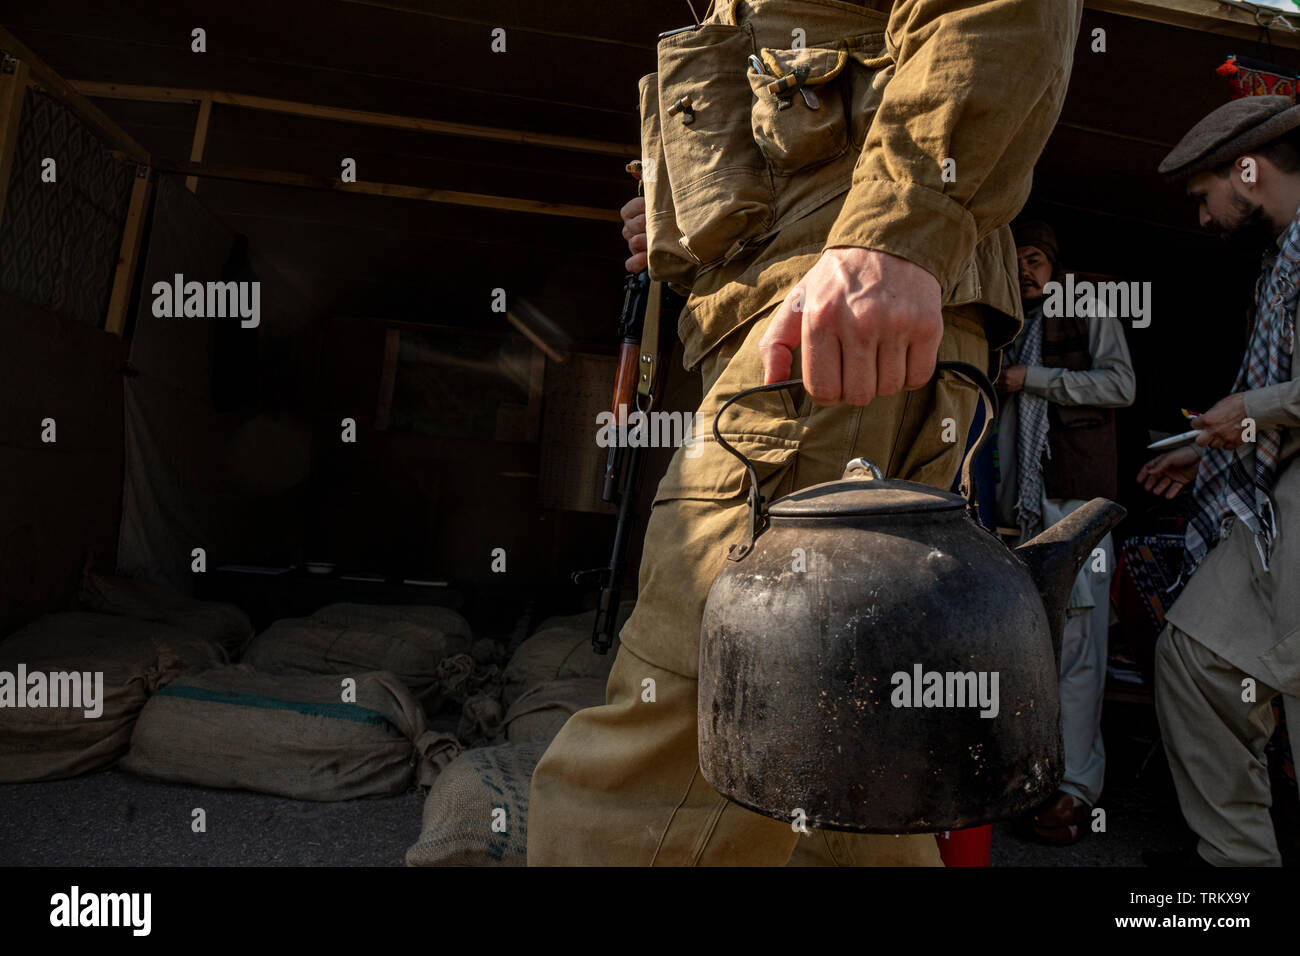 Soldat de l'armée soviétique va avec une bouilloire sur le village afghan lors de la guerre d'Afghanistan (1979-1989). Reconstitution historique de la vie de l'armée soviétique Banque D'Images